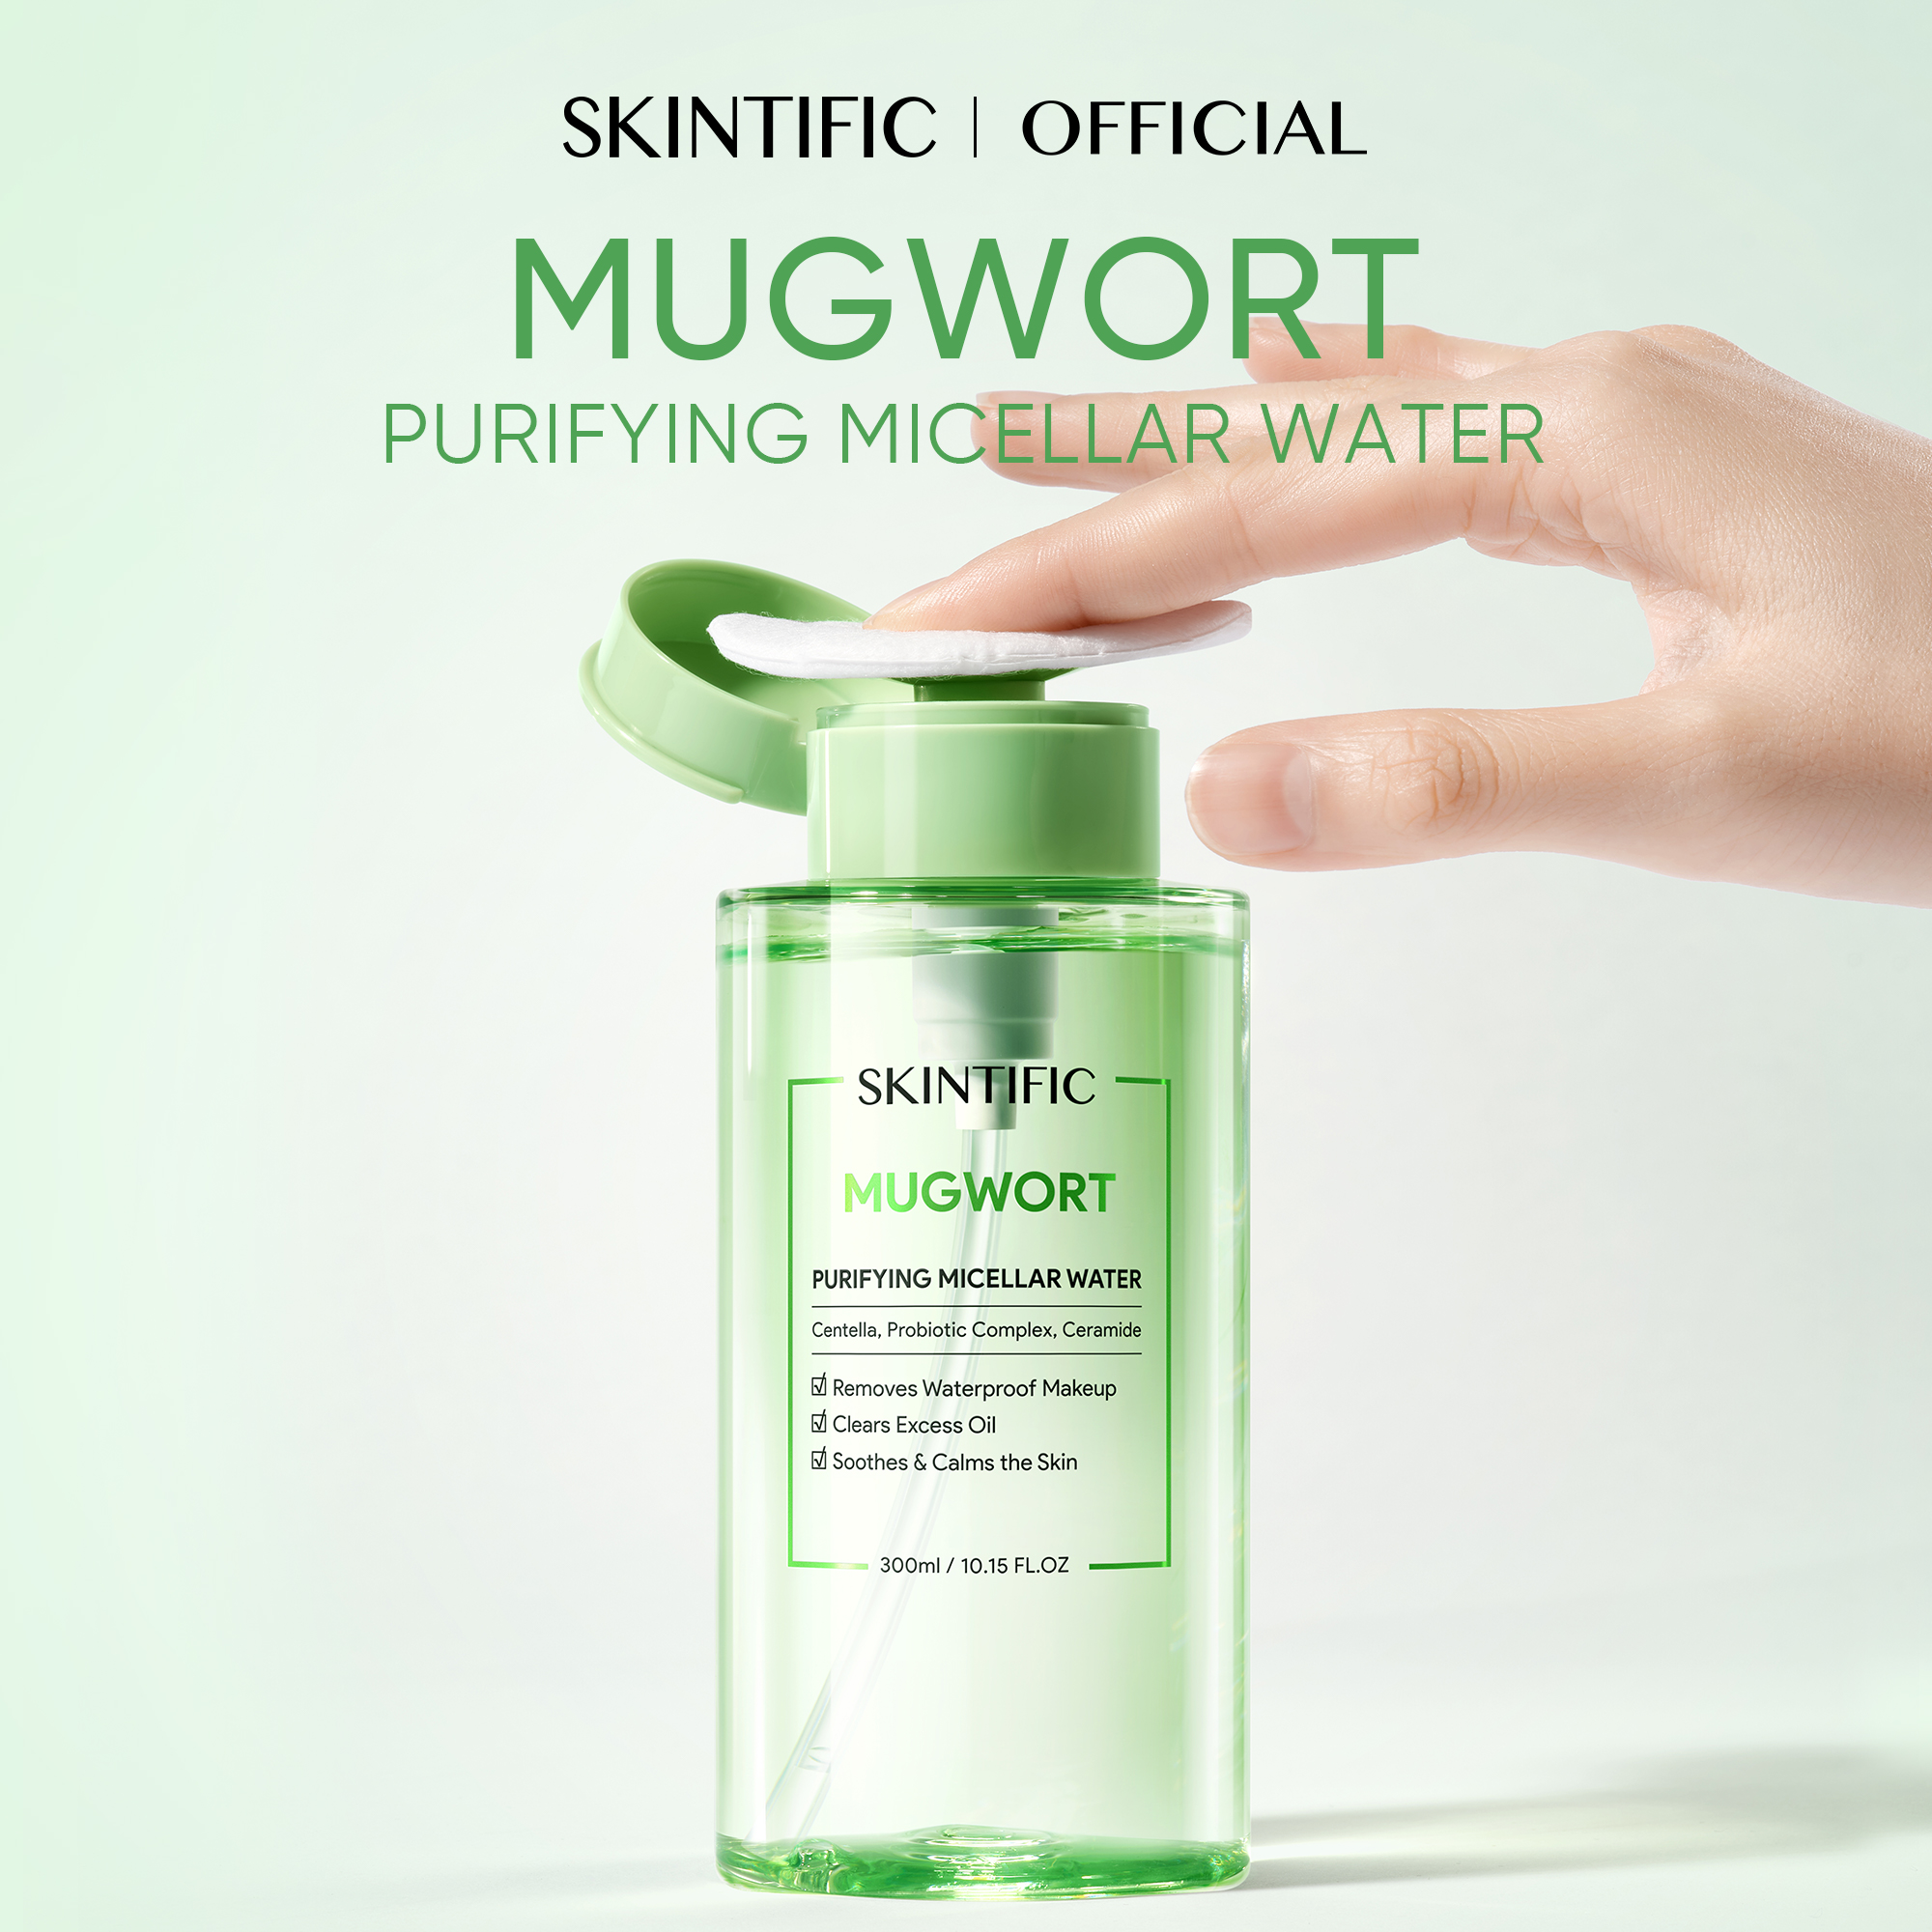 Mugwort Purifying Micellar Water